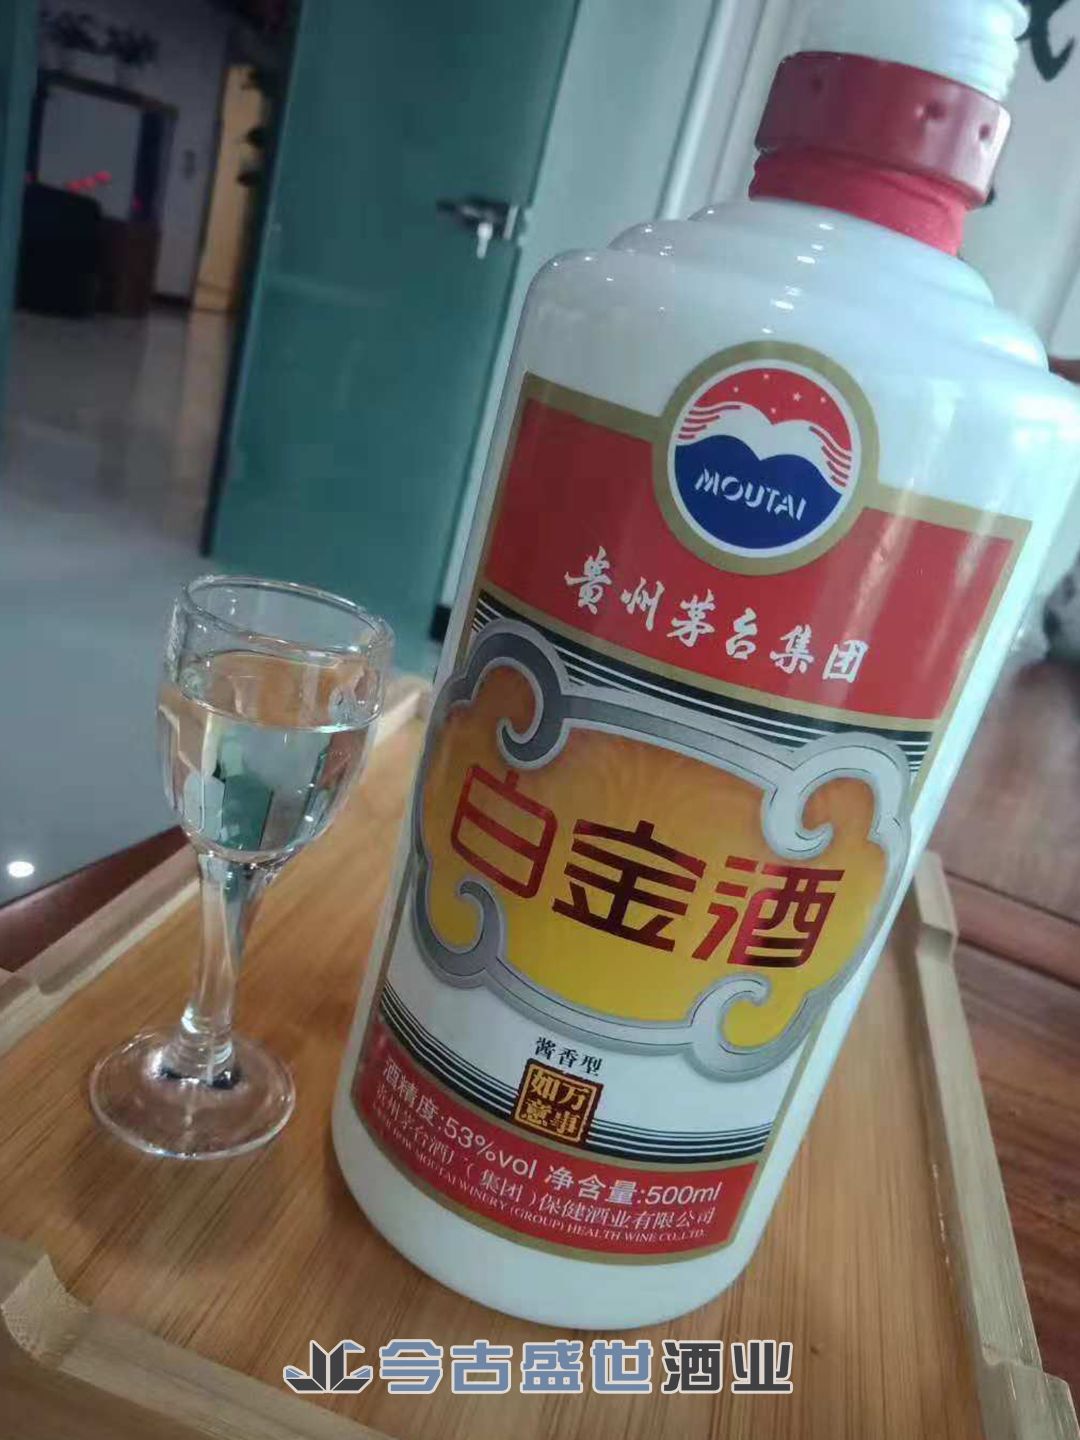 贵州茅台集团白金酒(万事如意)介绍